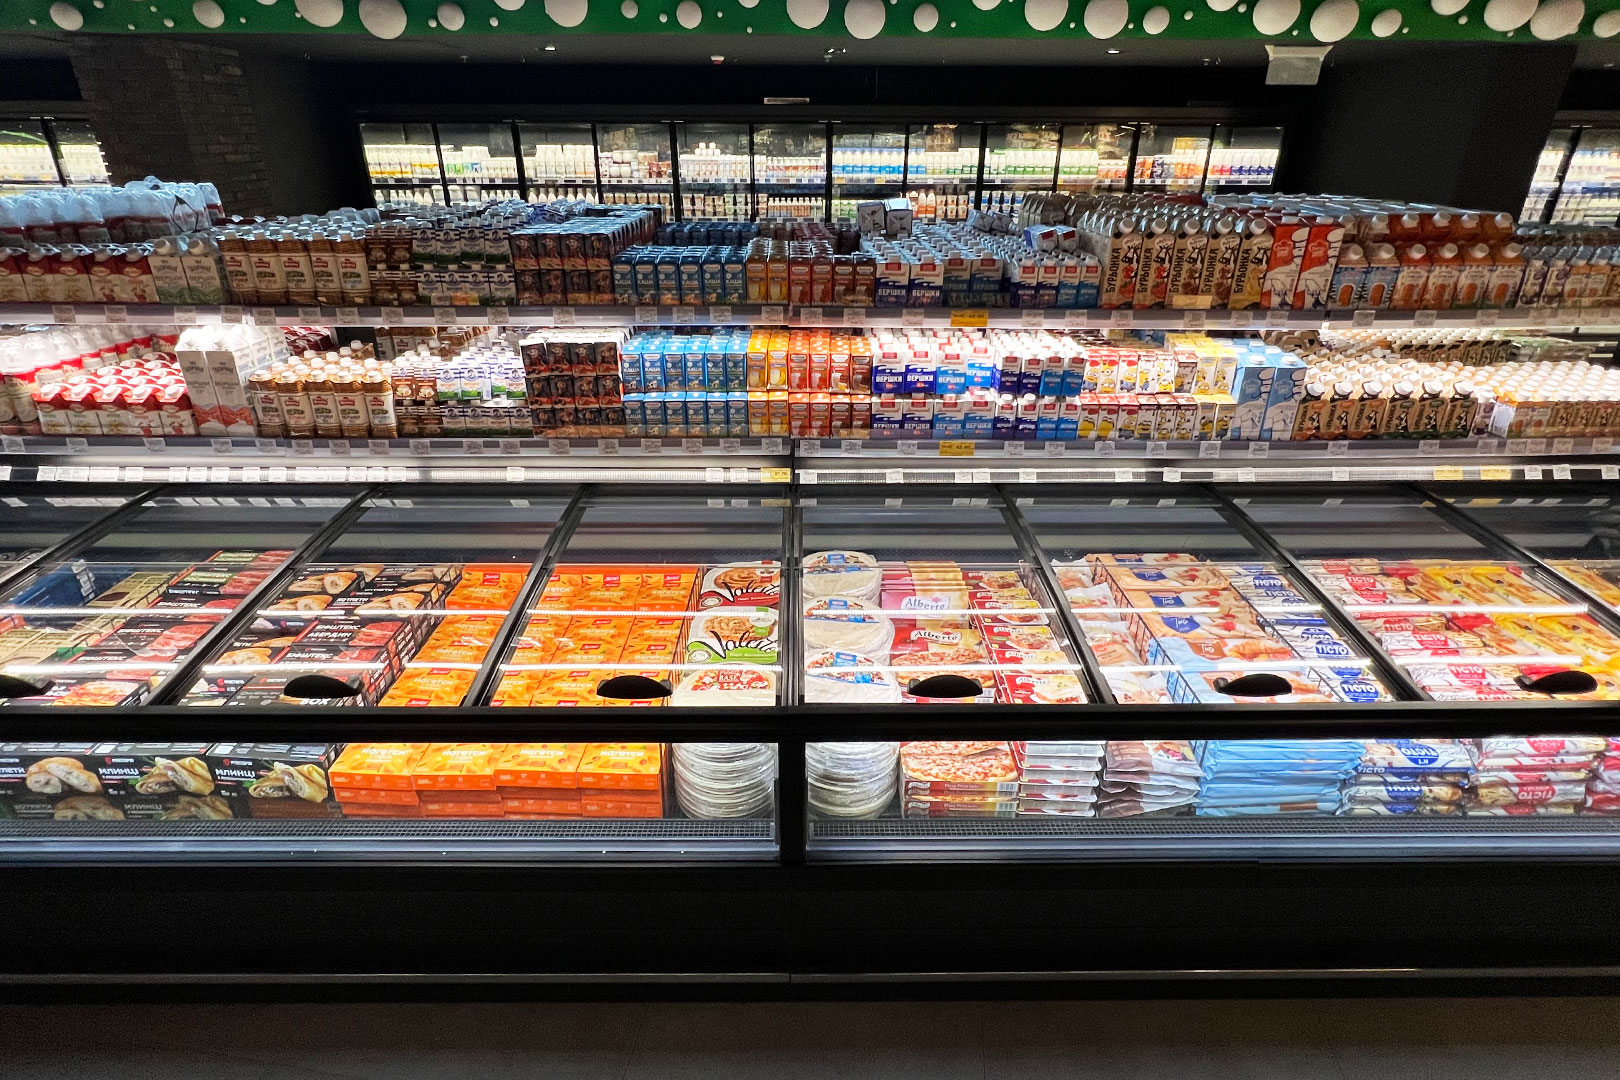 Frozen foods units Alaska DE MH 200 LT O, hypermarket ULTRAMARKET